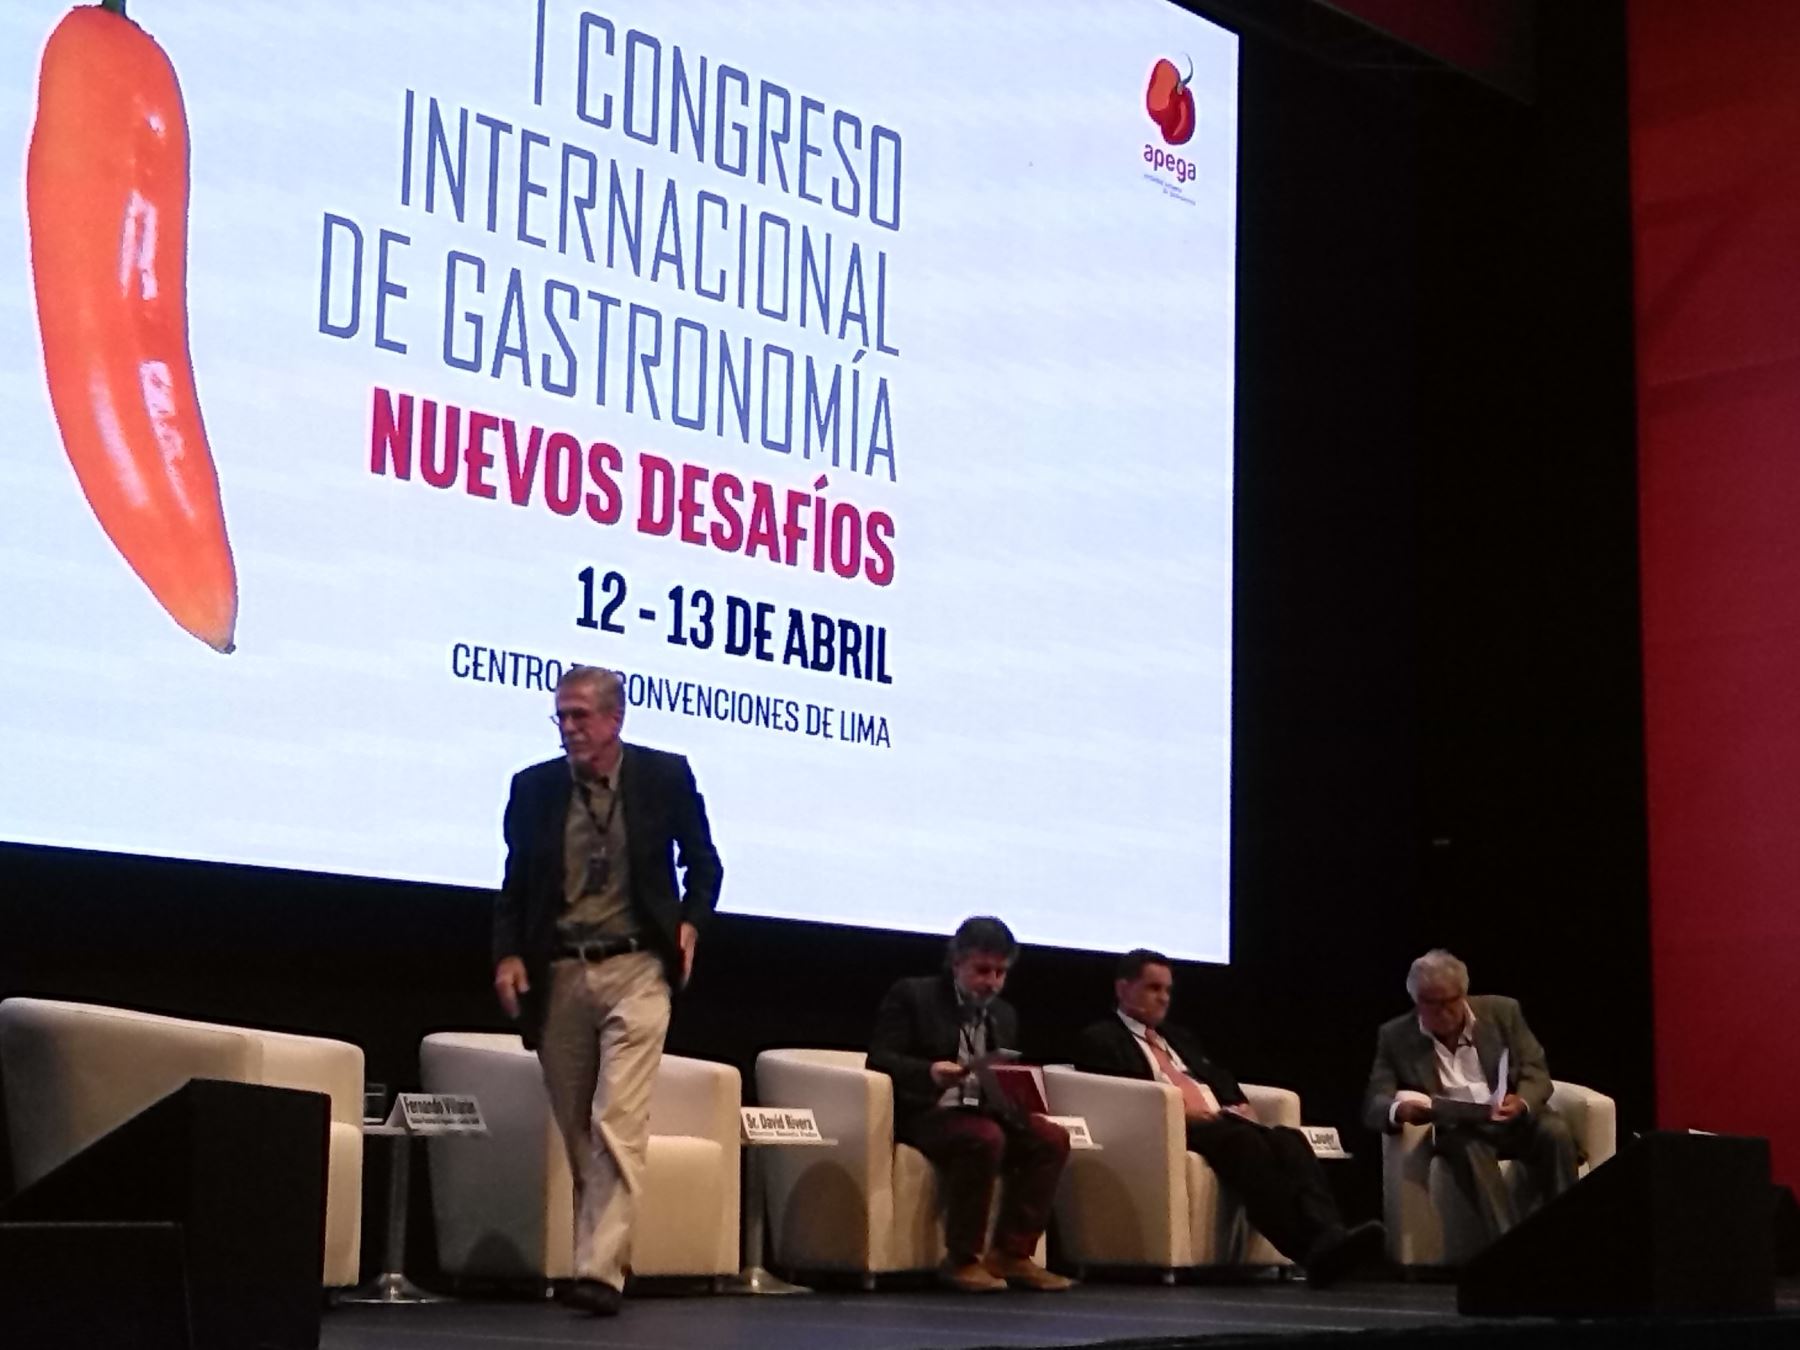 I Congreso Internacional de Gastronomía. Panel: retos y perspectivas de la gastronomía peruana 2021.